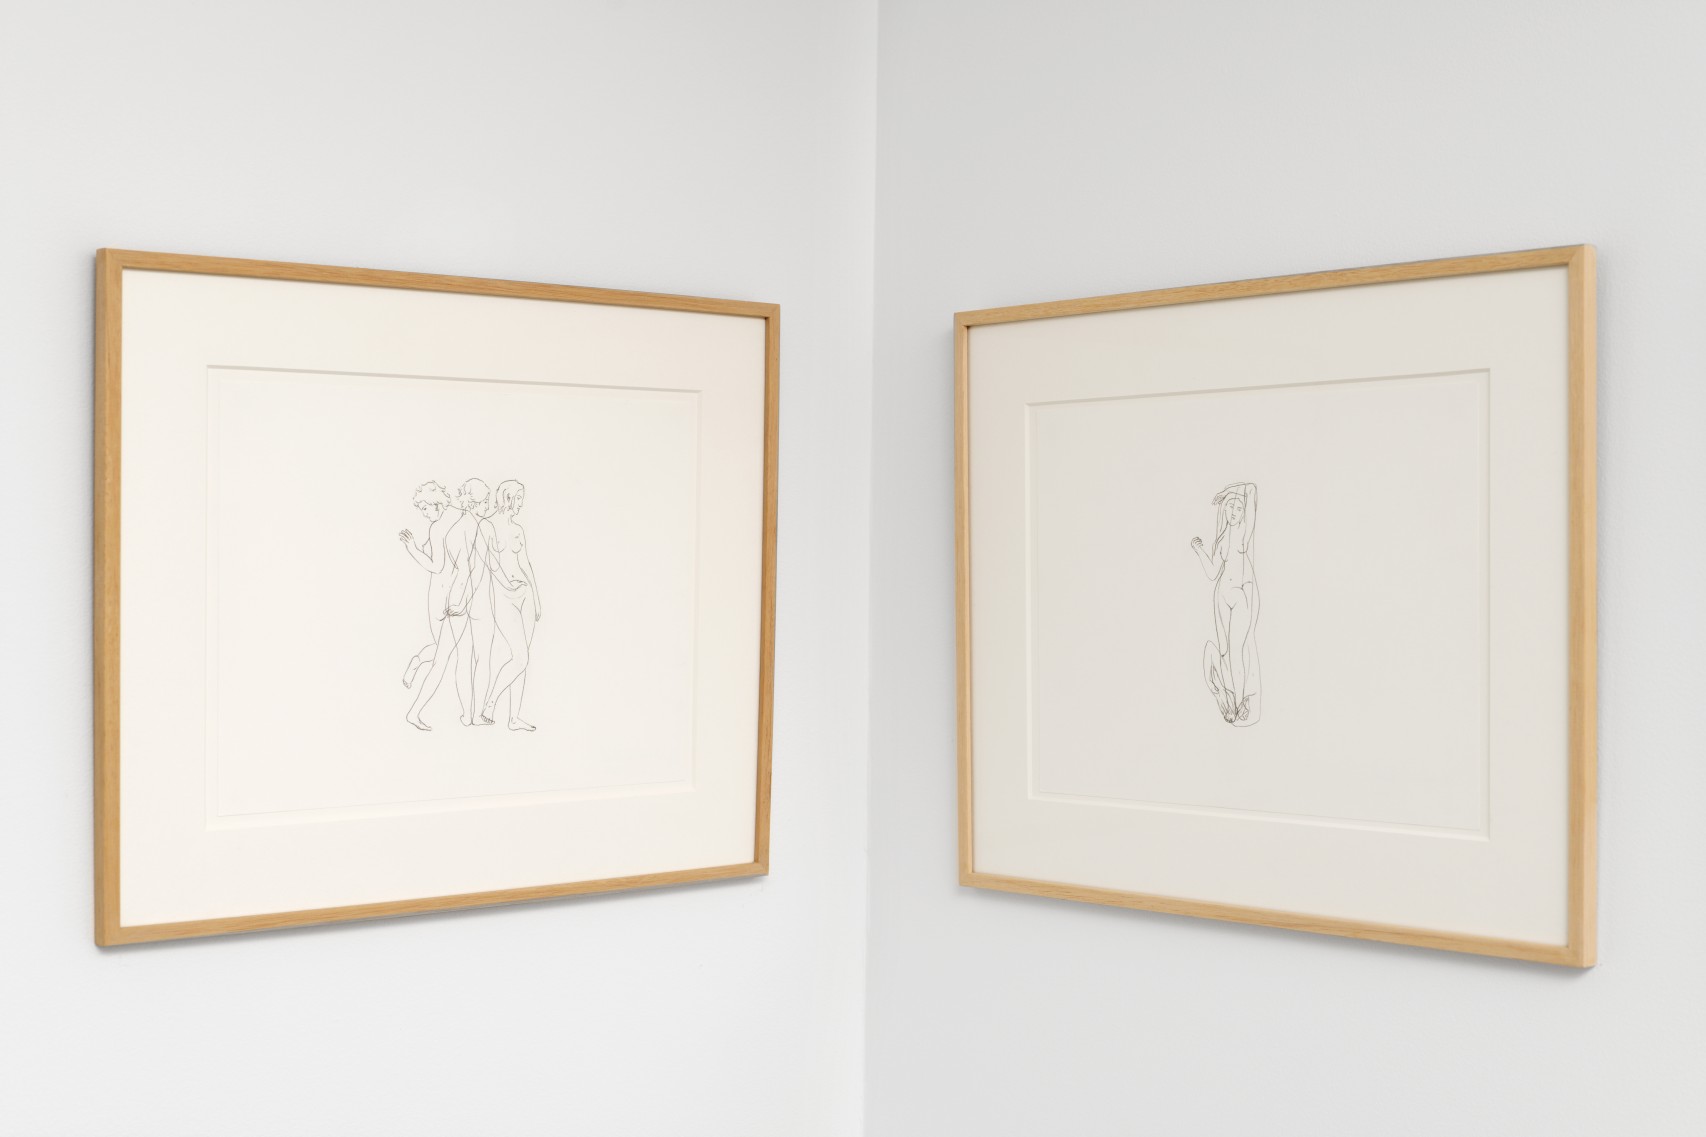 On the left: *The Female Gaze .02*, 2021, drawing on paper, 37 x 45 cm. On the right: *The Female Gaze .05*, 2021, drawing on paper, 37 x 45 cm. Courtesy the artist & Spiaggia Libera, Paris. © Aurélien Mole